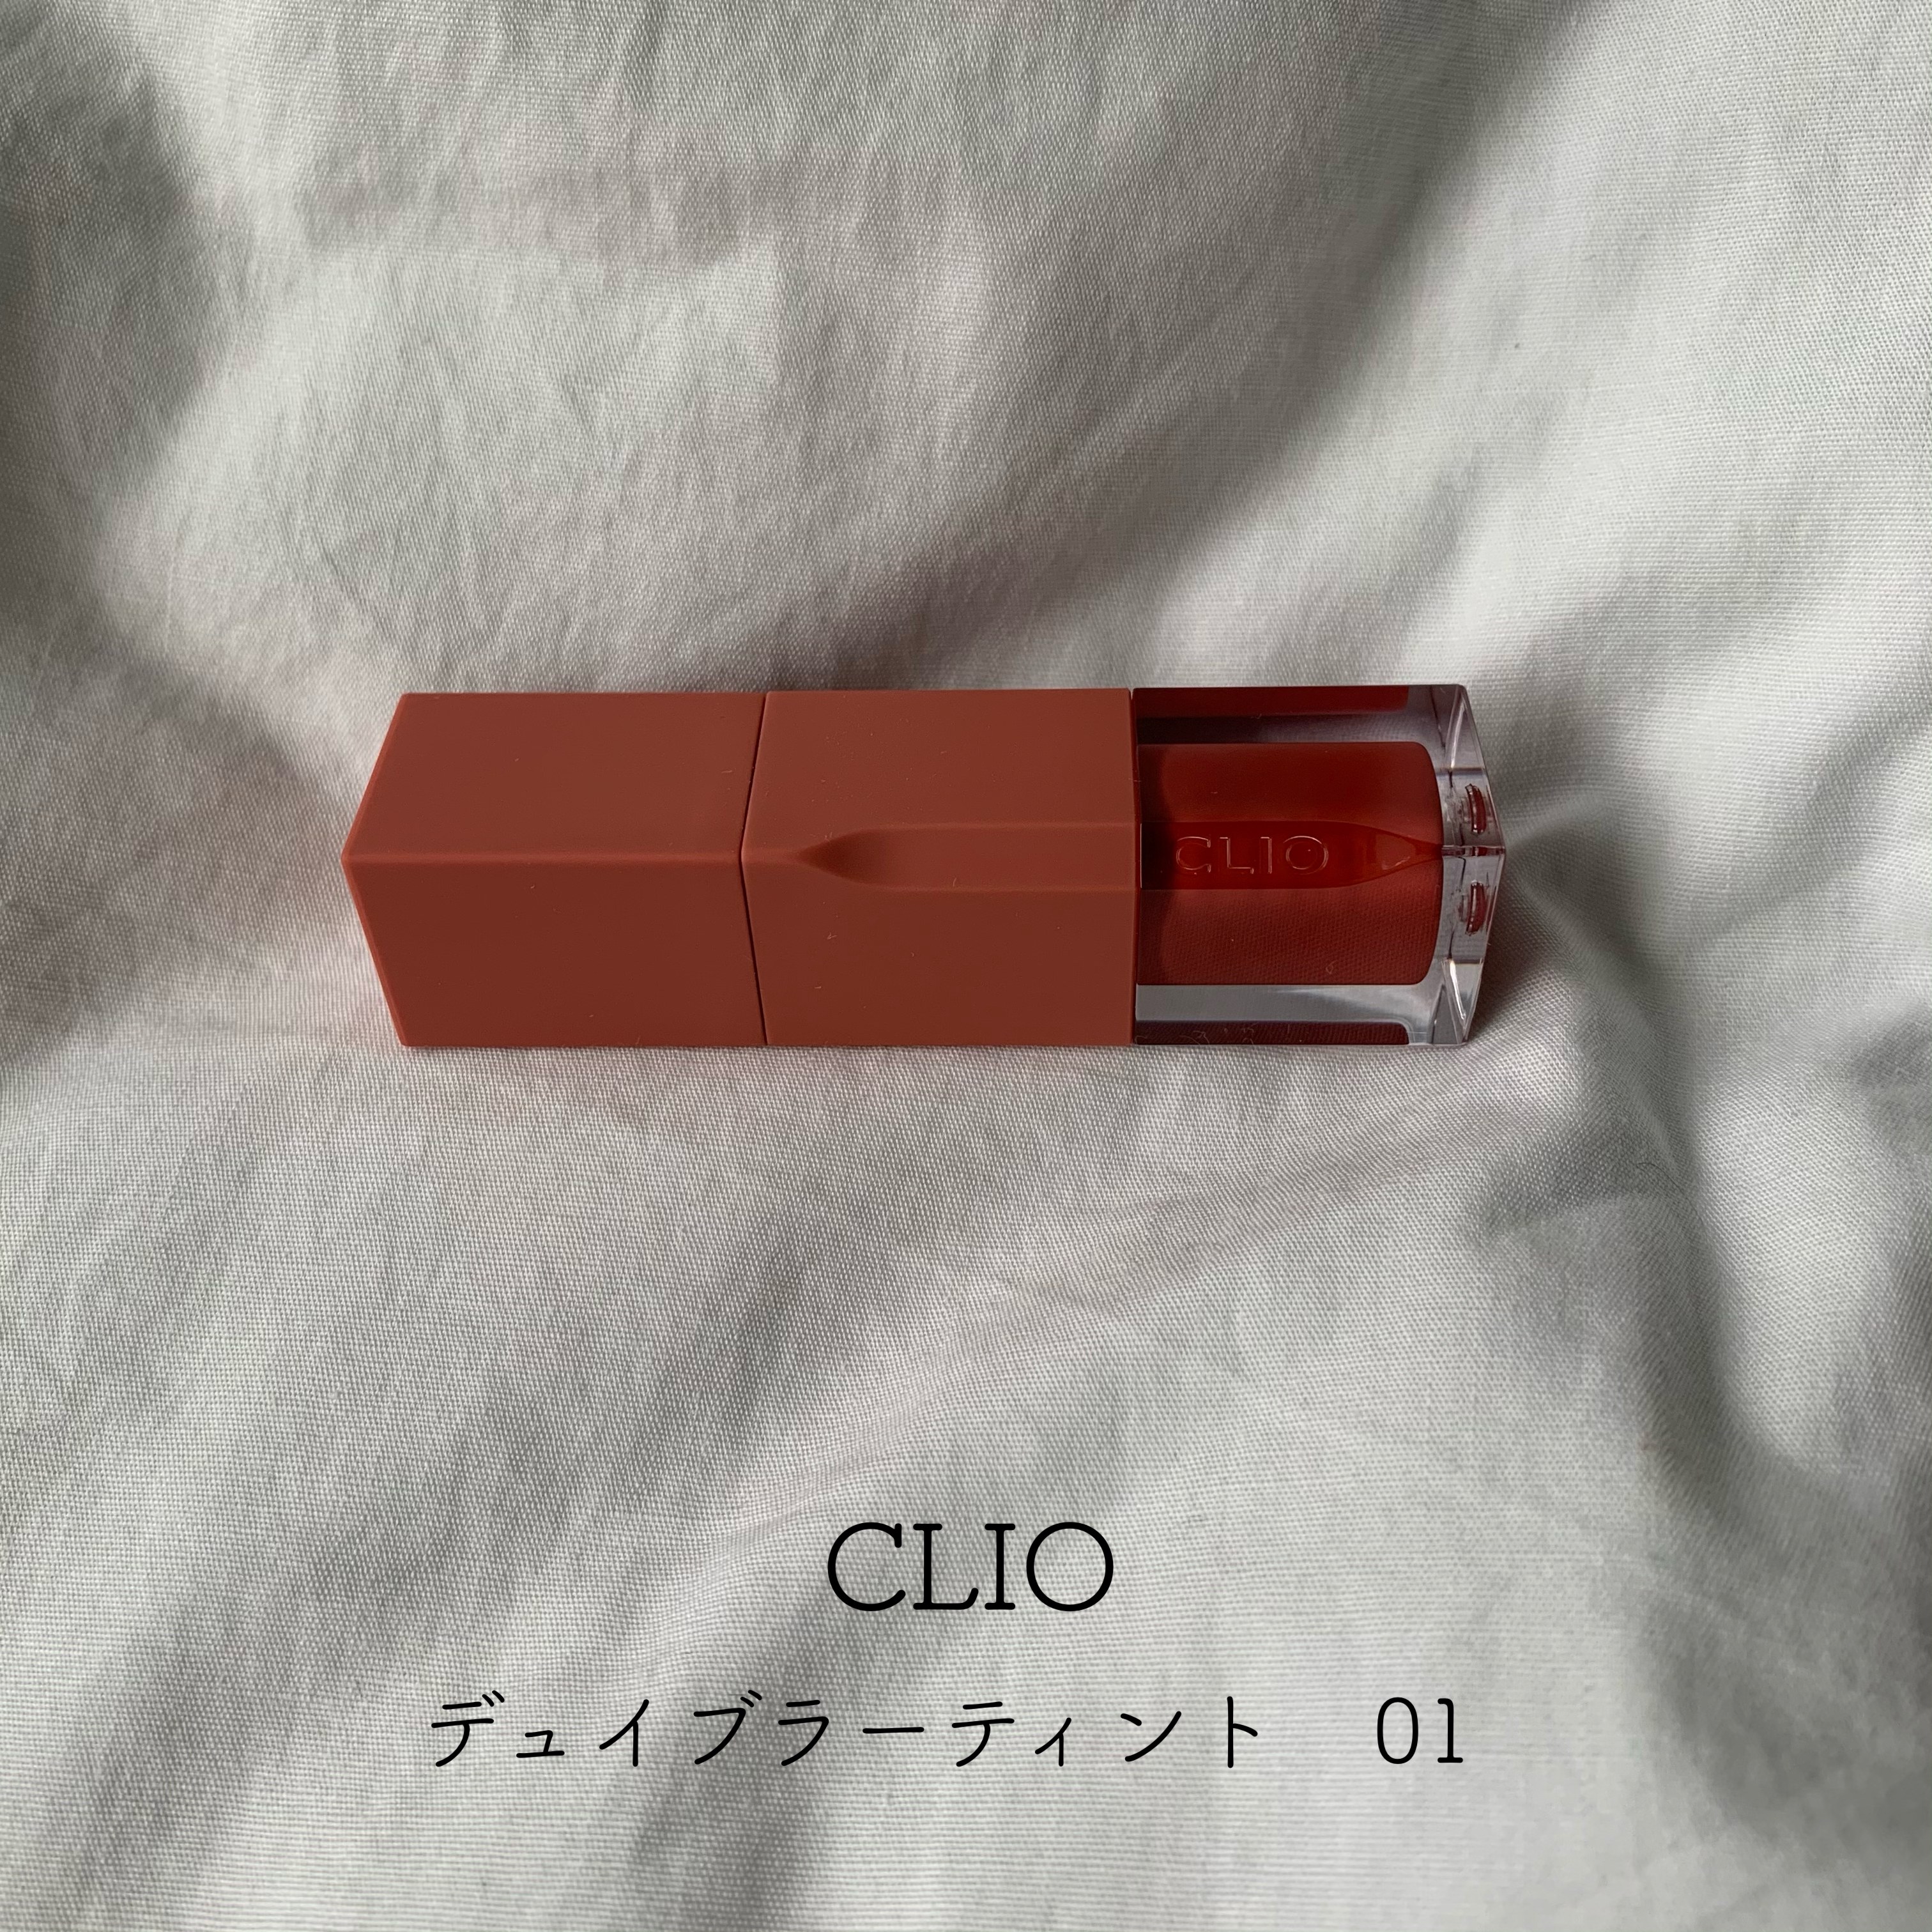 CLIO(クリオ) デューイ ブラー ティントの良い点・メリットに関するとあさんの口コミ画像1